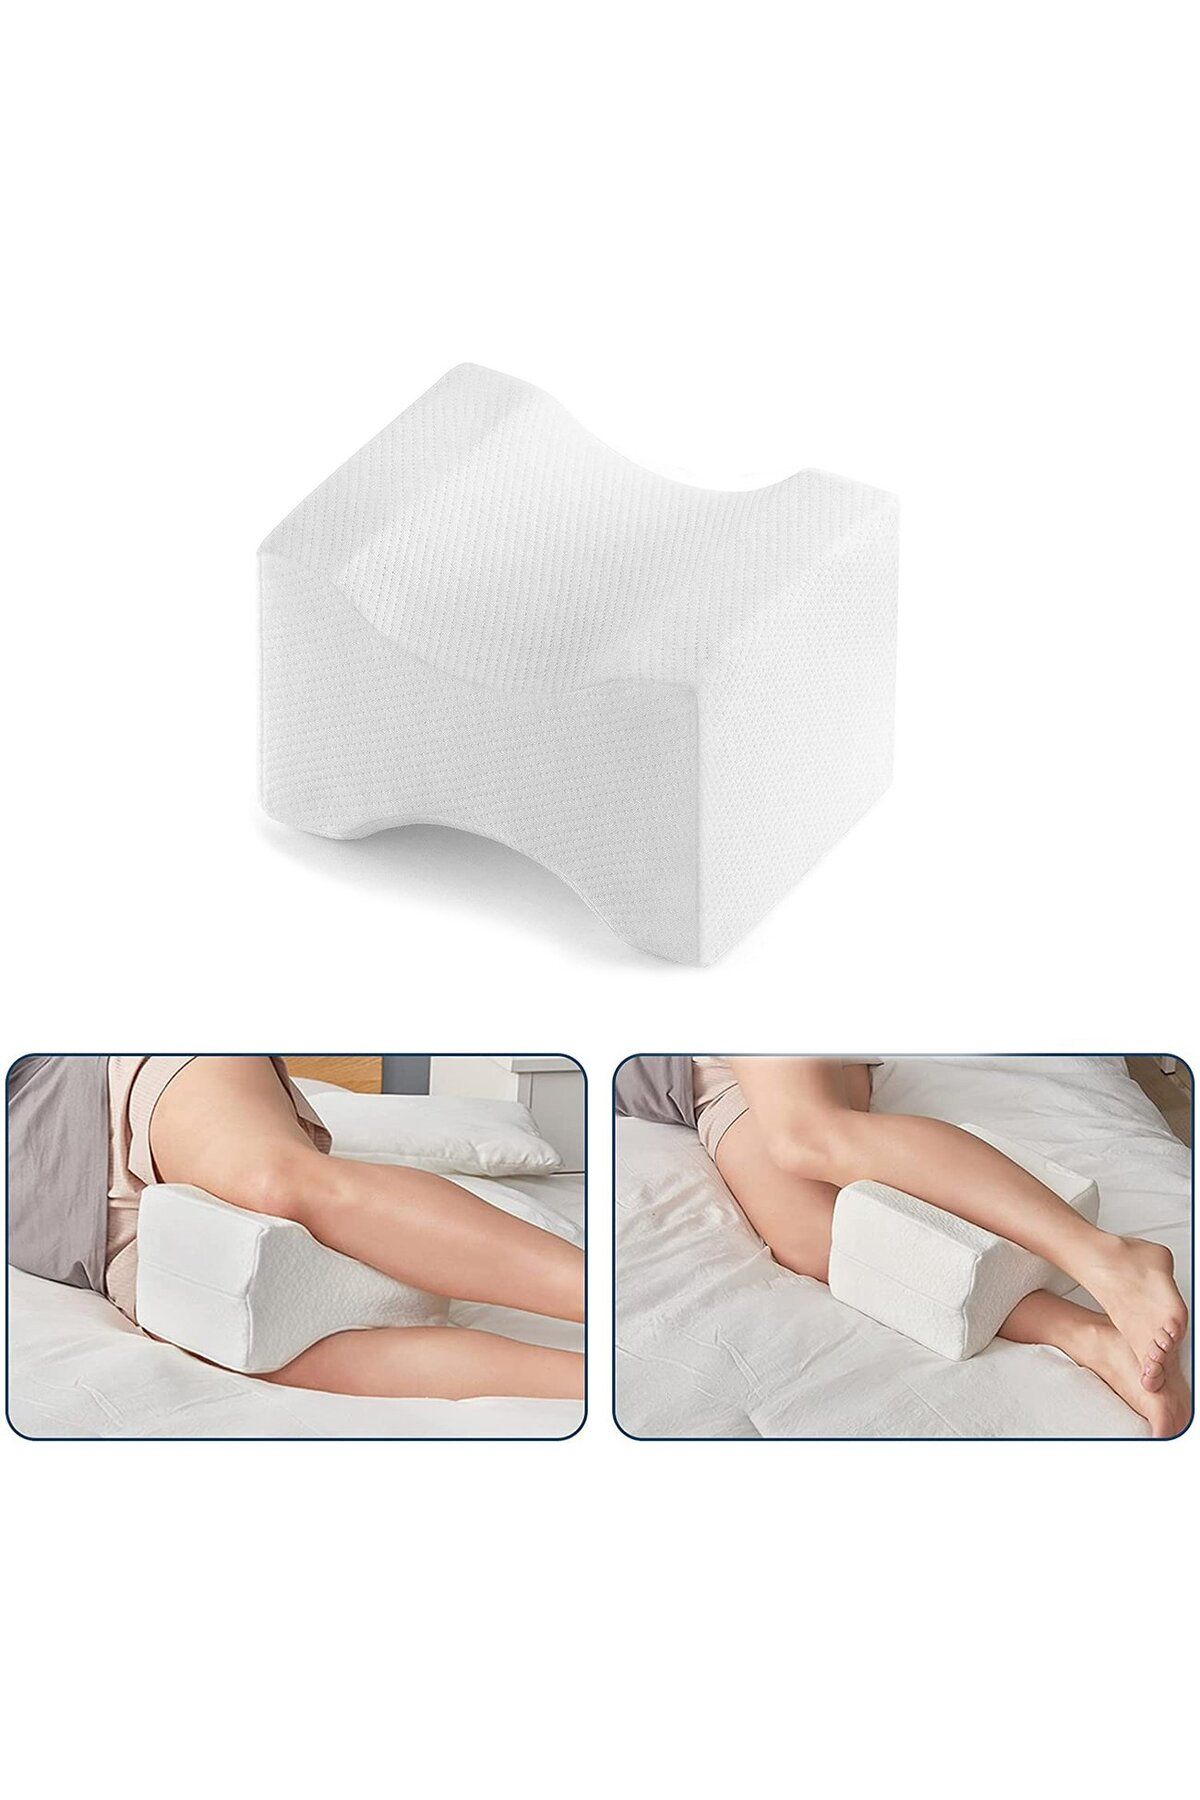 Marmara Beyaz Ortopedik Hamile Destek Yastığı Bacak Arası Yastık Hamile Yastığı Pozisyon Yastığı bacakarası